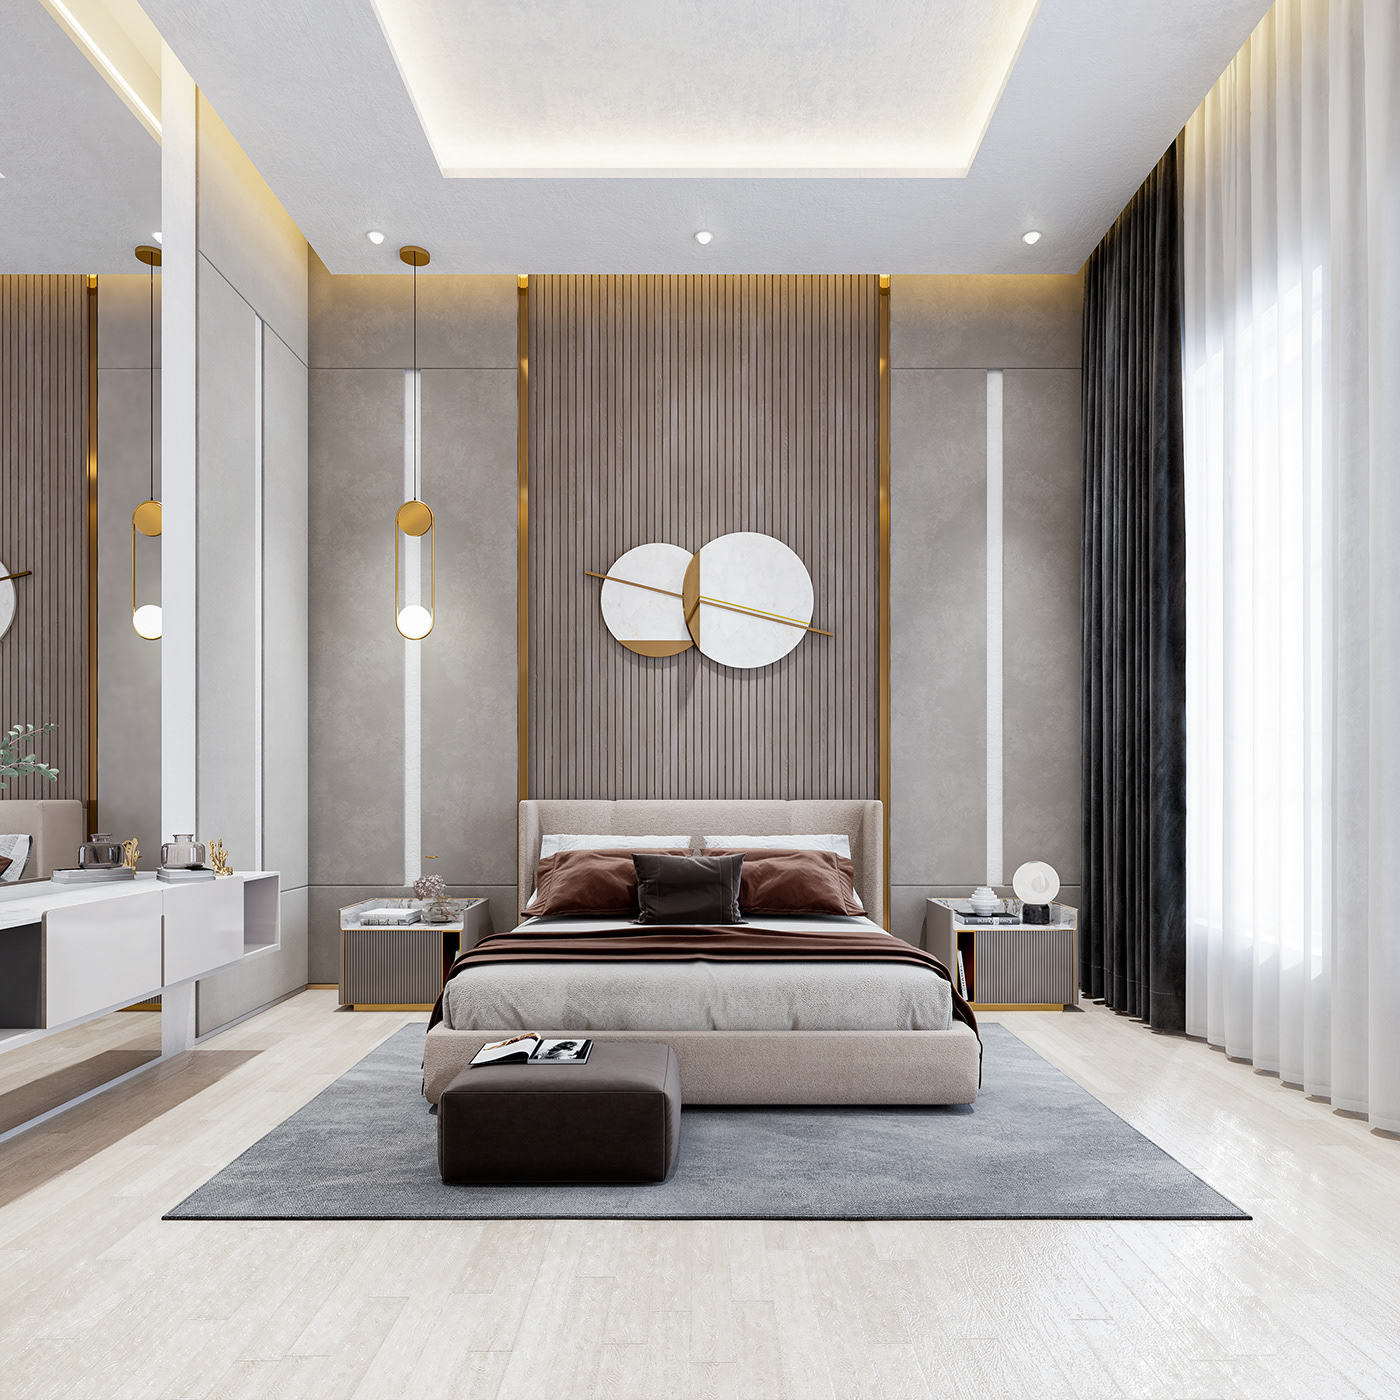 3ds max contemporary interior Interior Architecture interior design  luxury interior modern interior villa interior vray